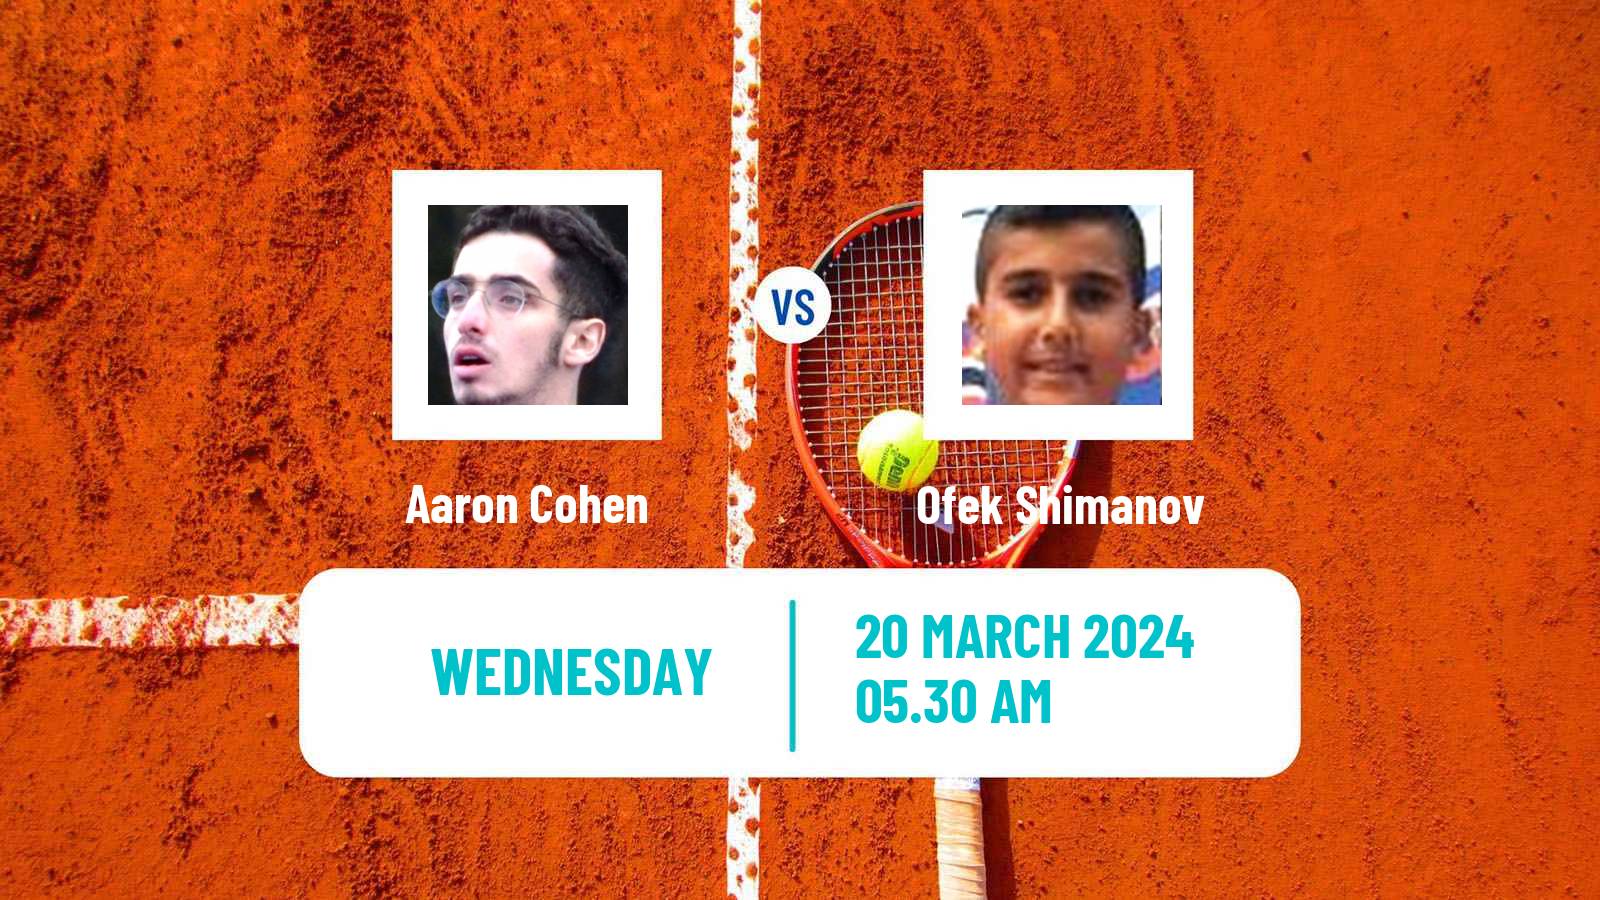 Tennis ITF M15 Heraklion 3 Men Aaron Cohen - Ofek Shimanov